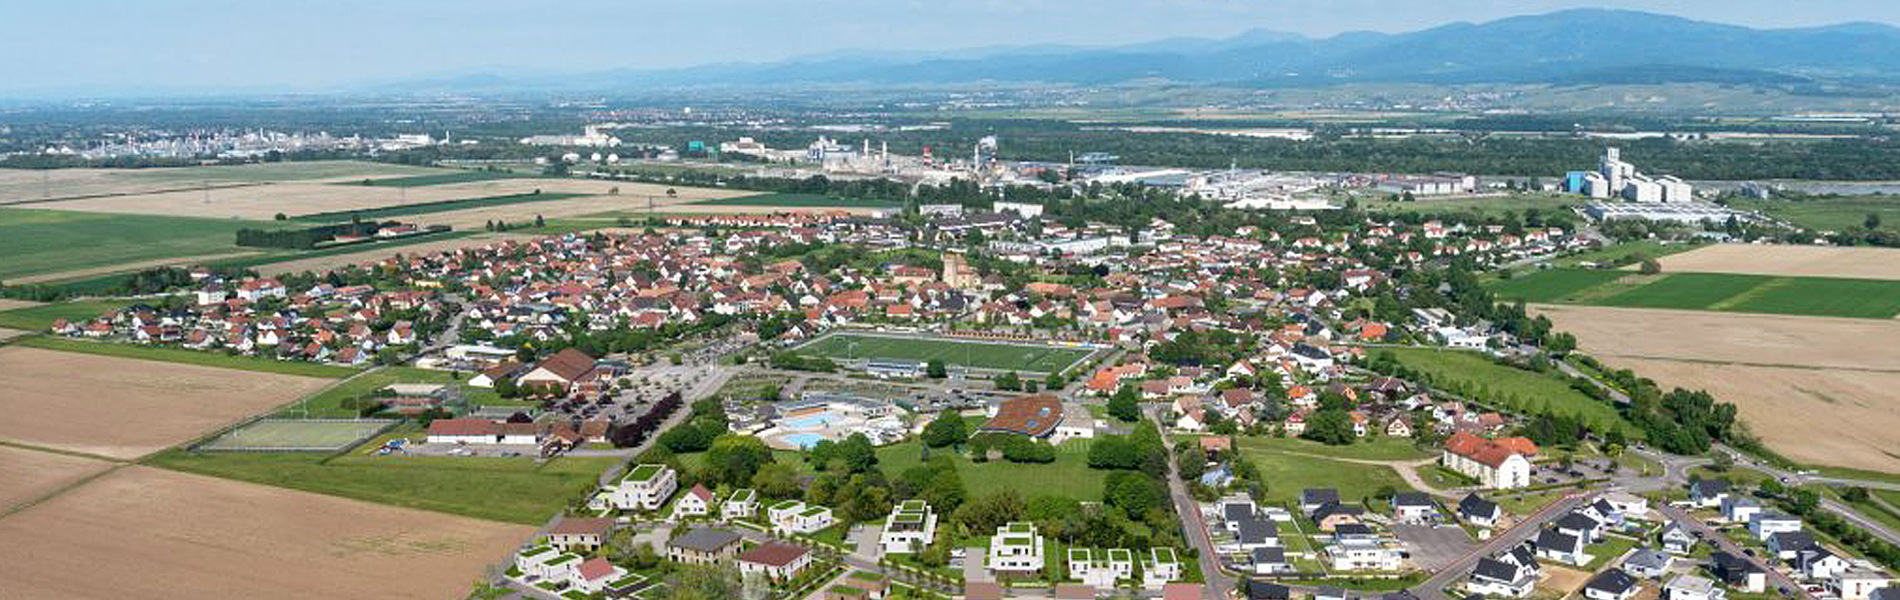 Ottmarsheim_vue aérien